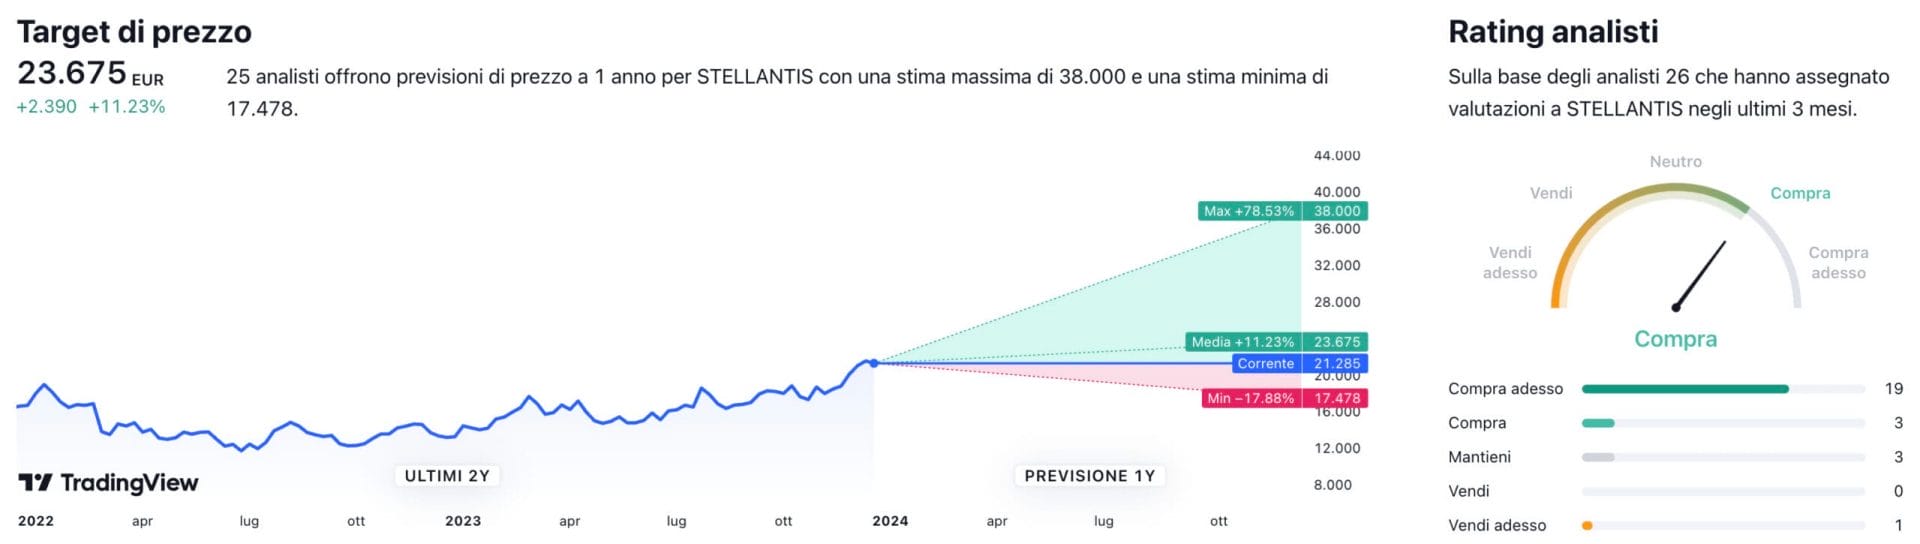 Target di prezzo a un anno e raccomandazioni degli analisti per il titolo Stellantis